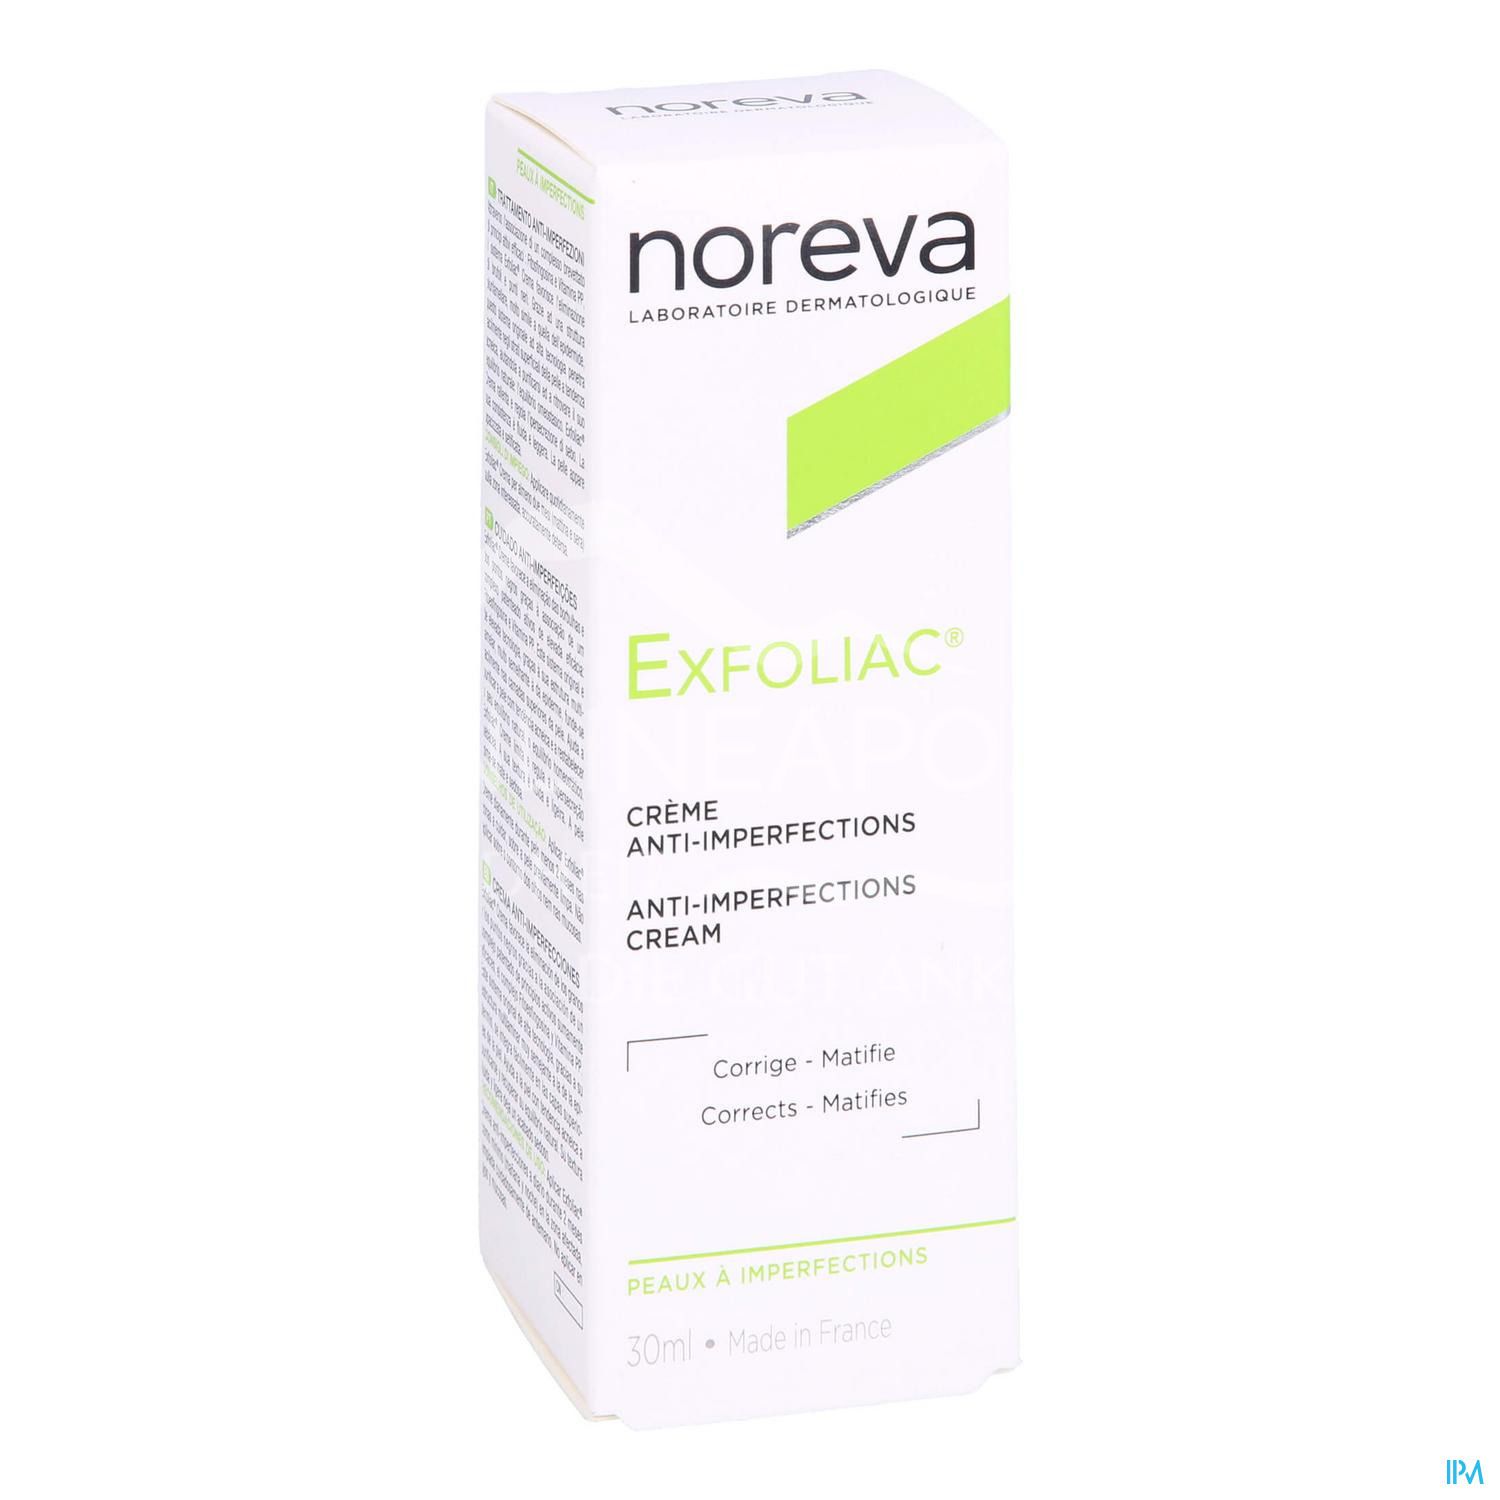 Noreva Exfoliac Creme